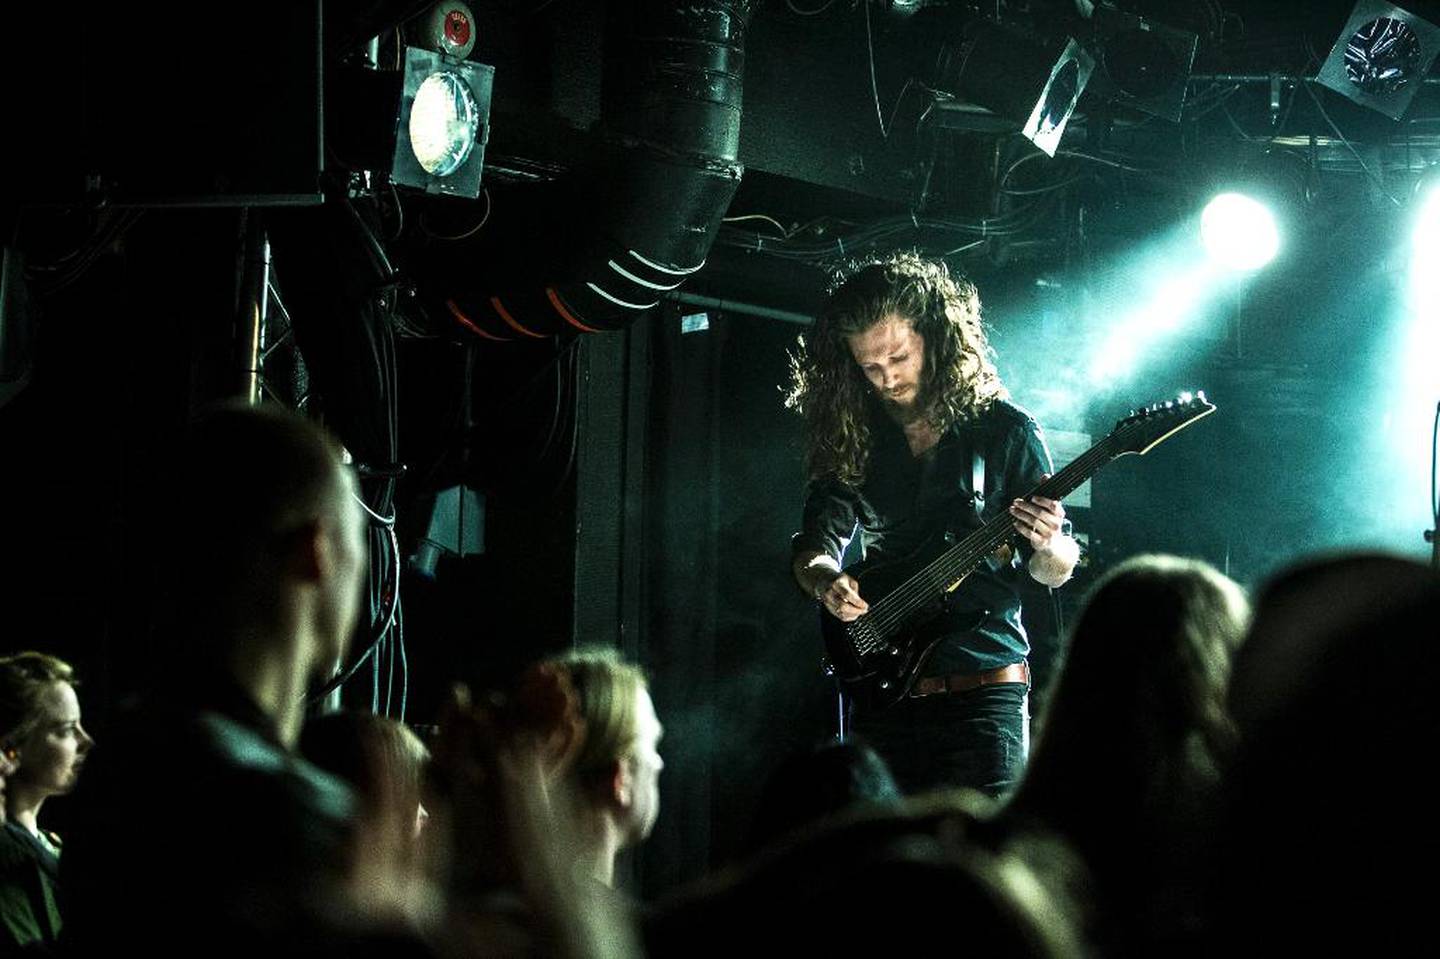 – Jeg skulle jo aldri bli lovsangsgitarist, jeg er jo metalgitarist, sier Chris Slettvoll. Han spiller gitar i bandet Fastlane Flower.